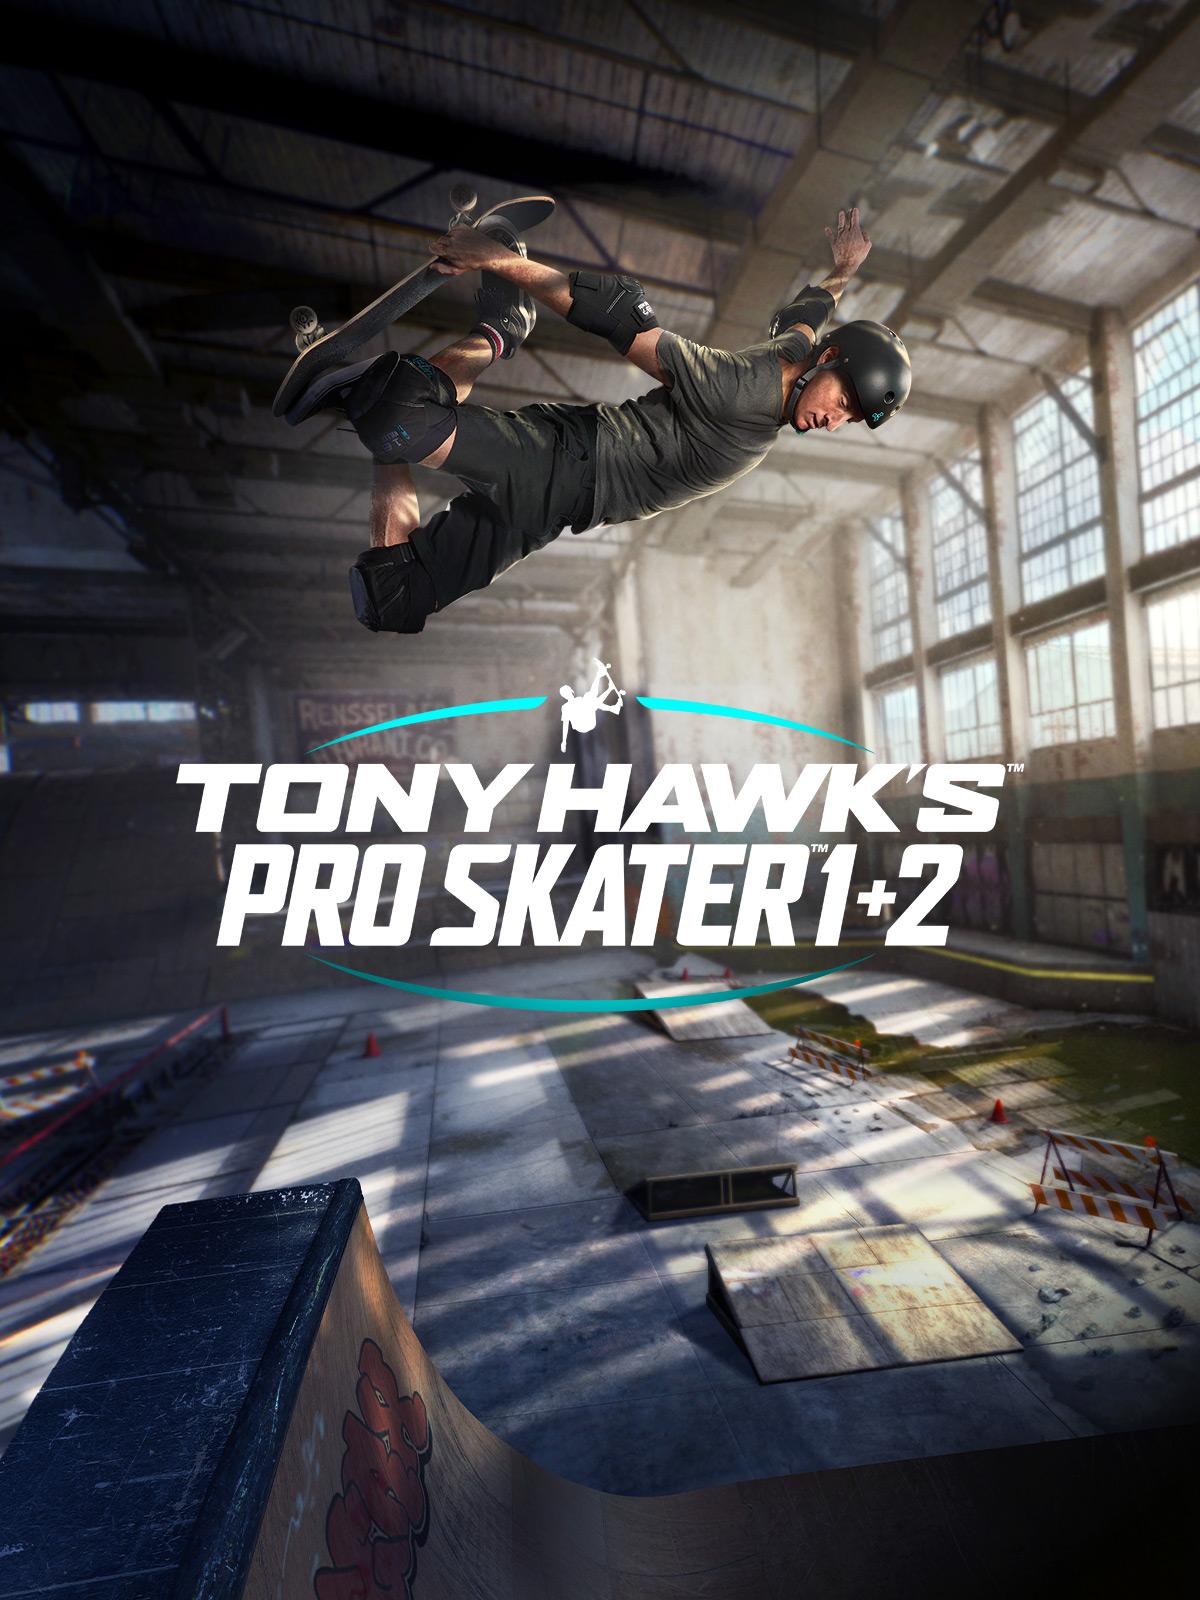 jaquette reduite de Tony Hawk's Pro Skater 1 + 2 sur PC